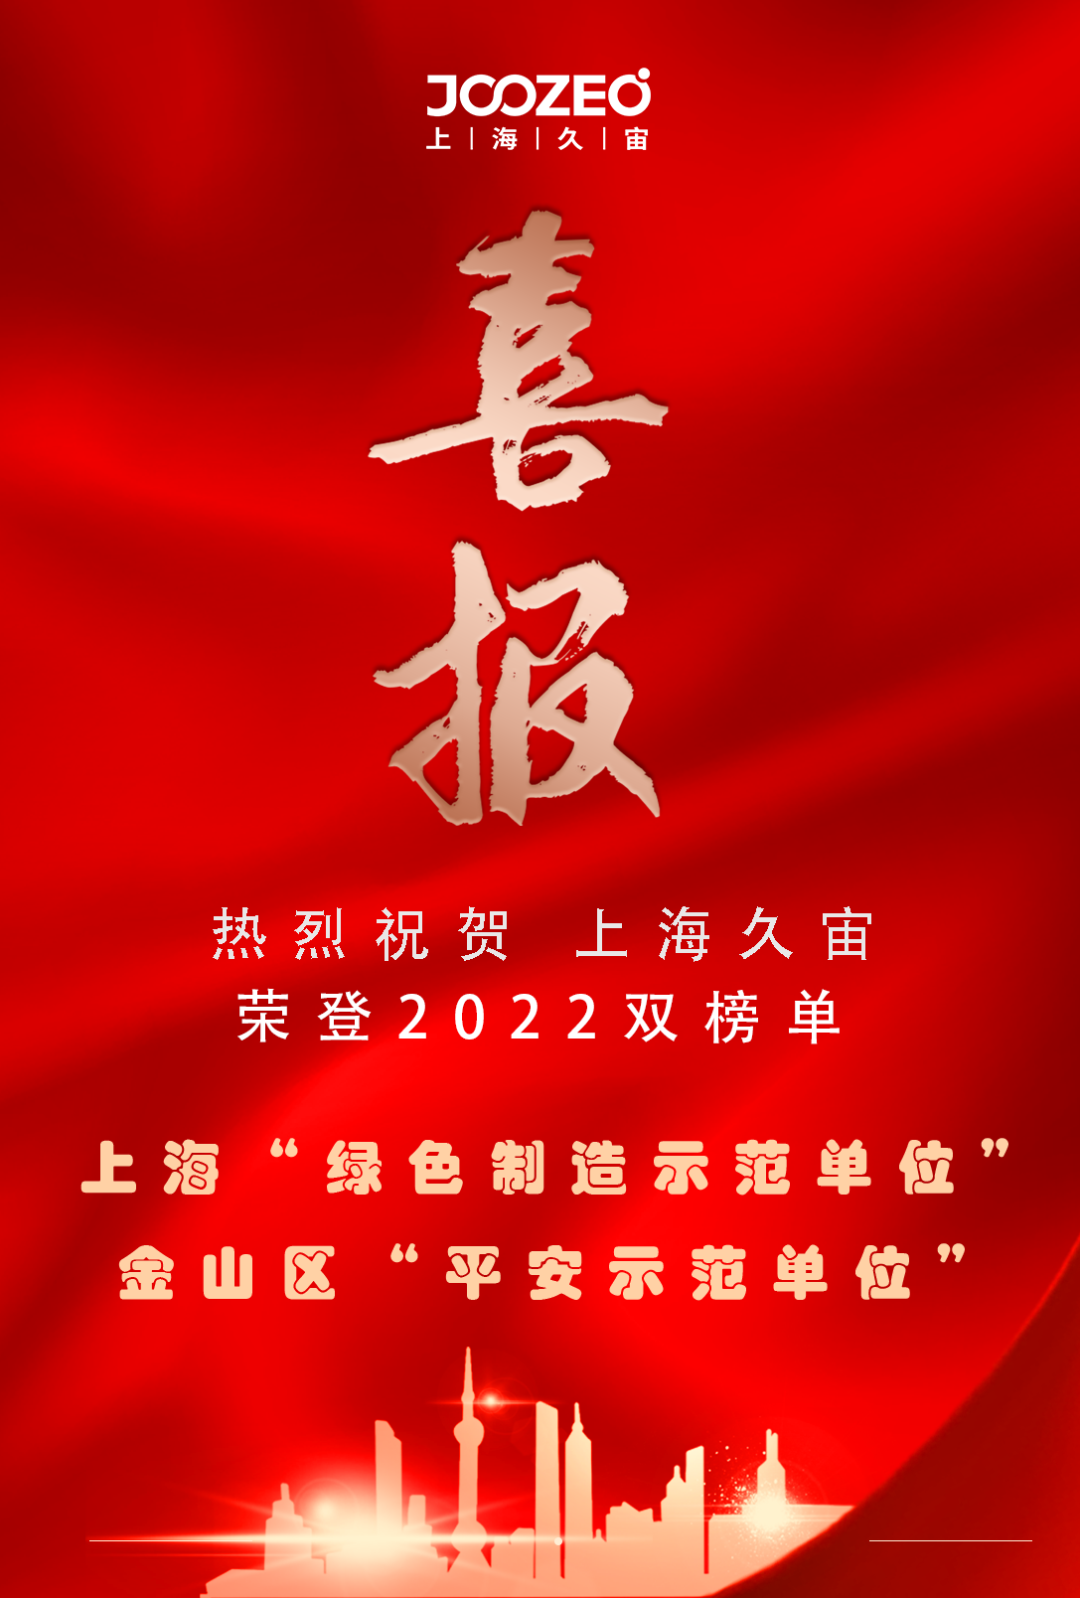 上海久宙荣登“2022上海绿色制造示范单位” 和“金山区平安示范单位”双榜单！